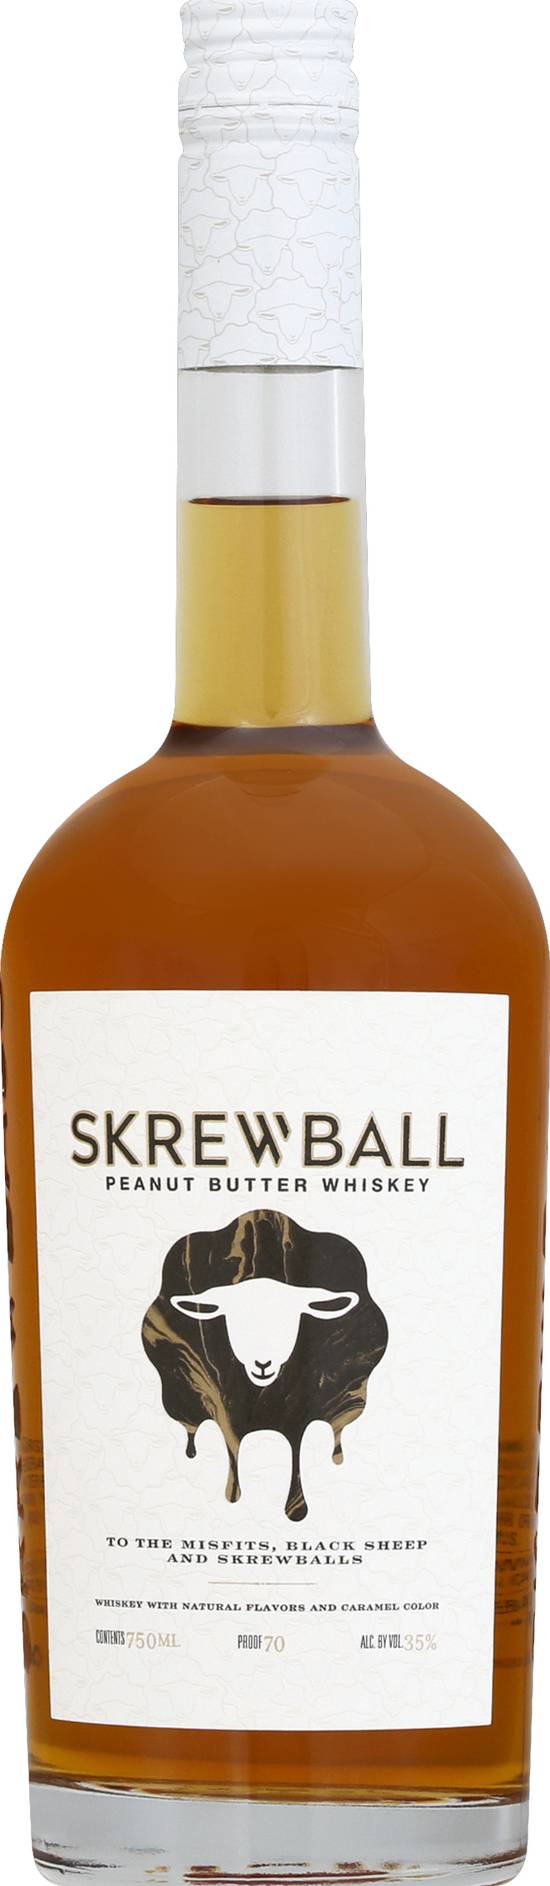 Skrewball California Peanut Butter Whiskey (750 ml)